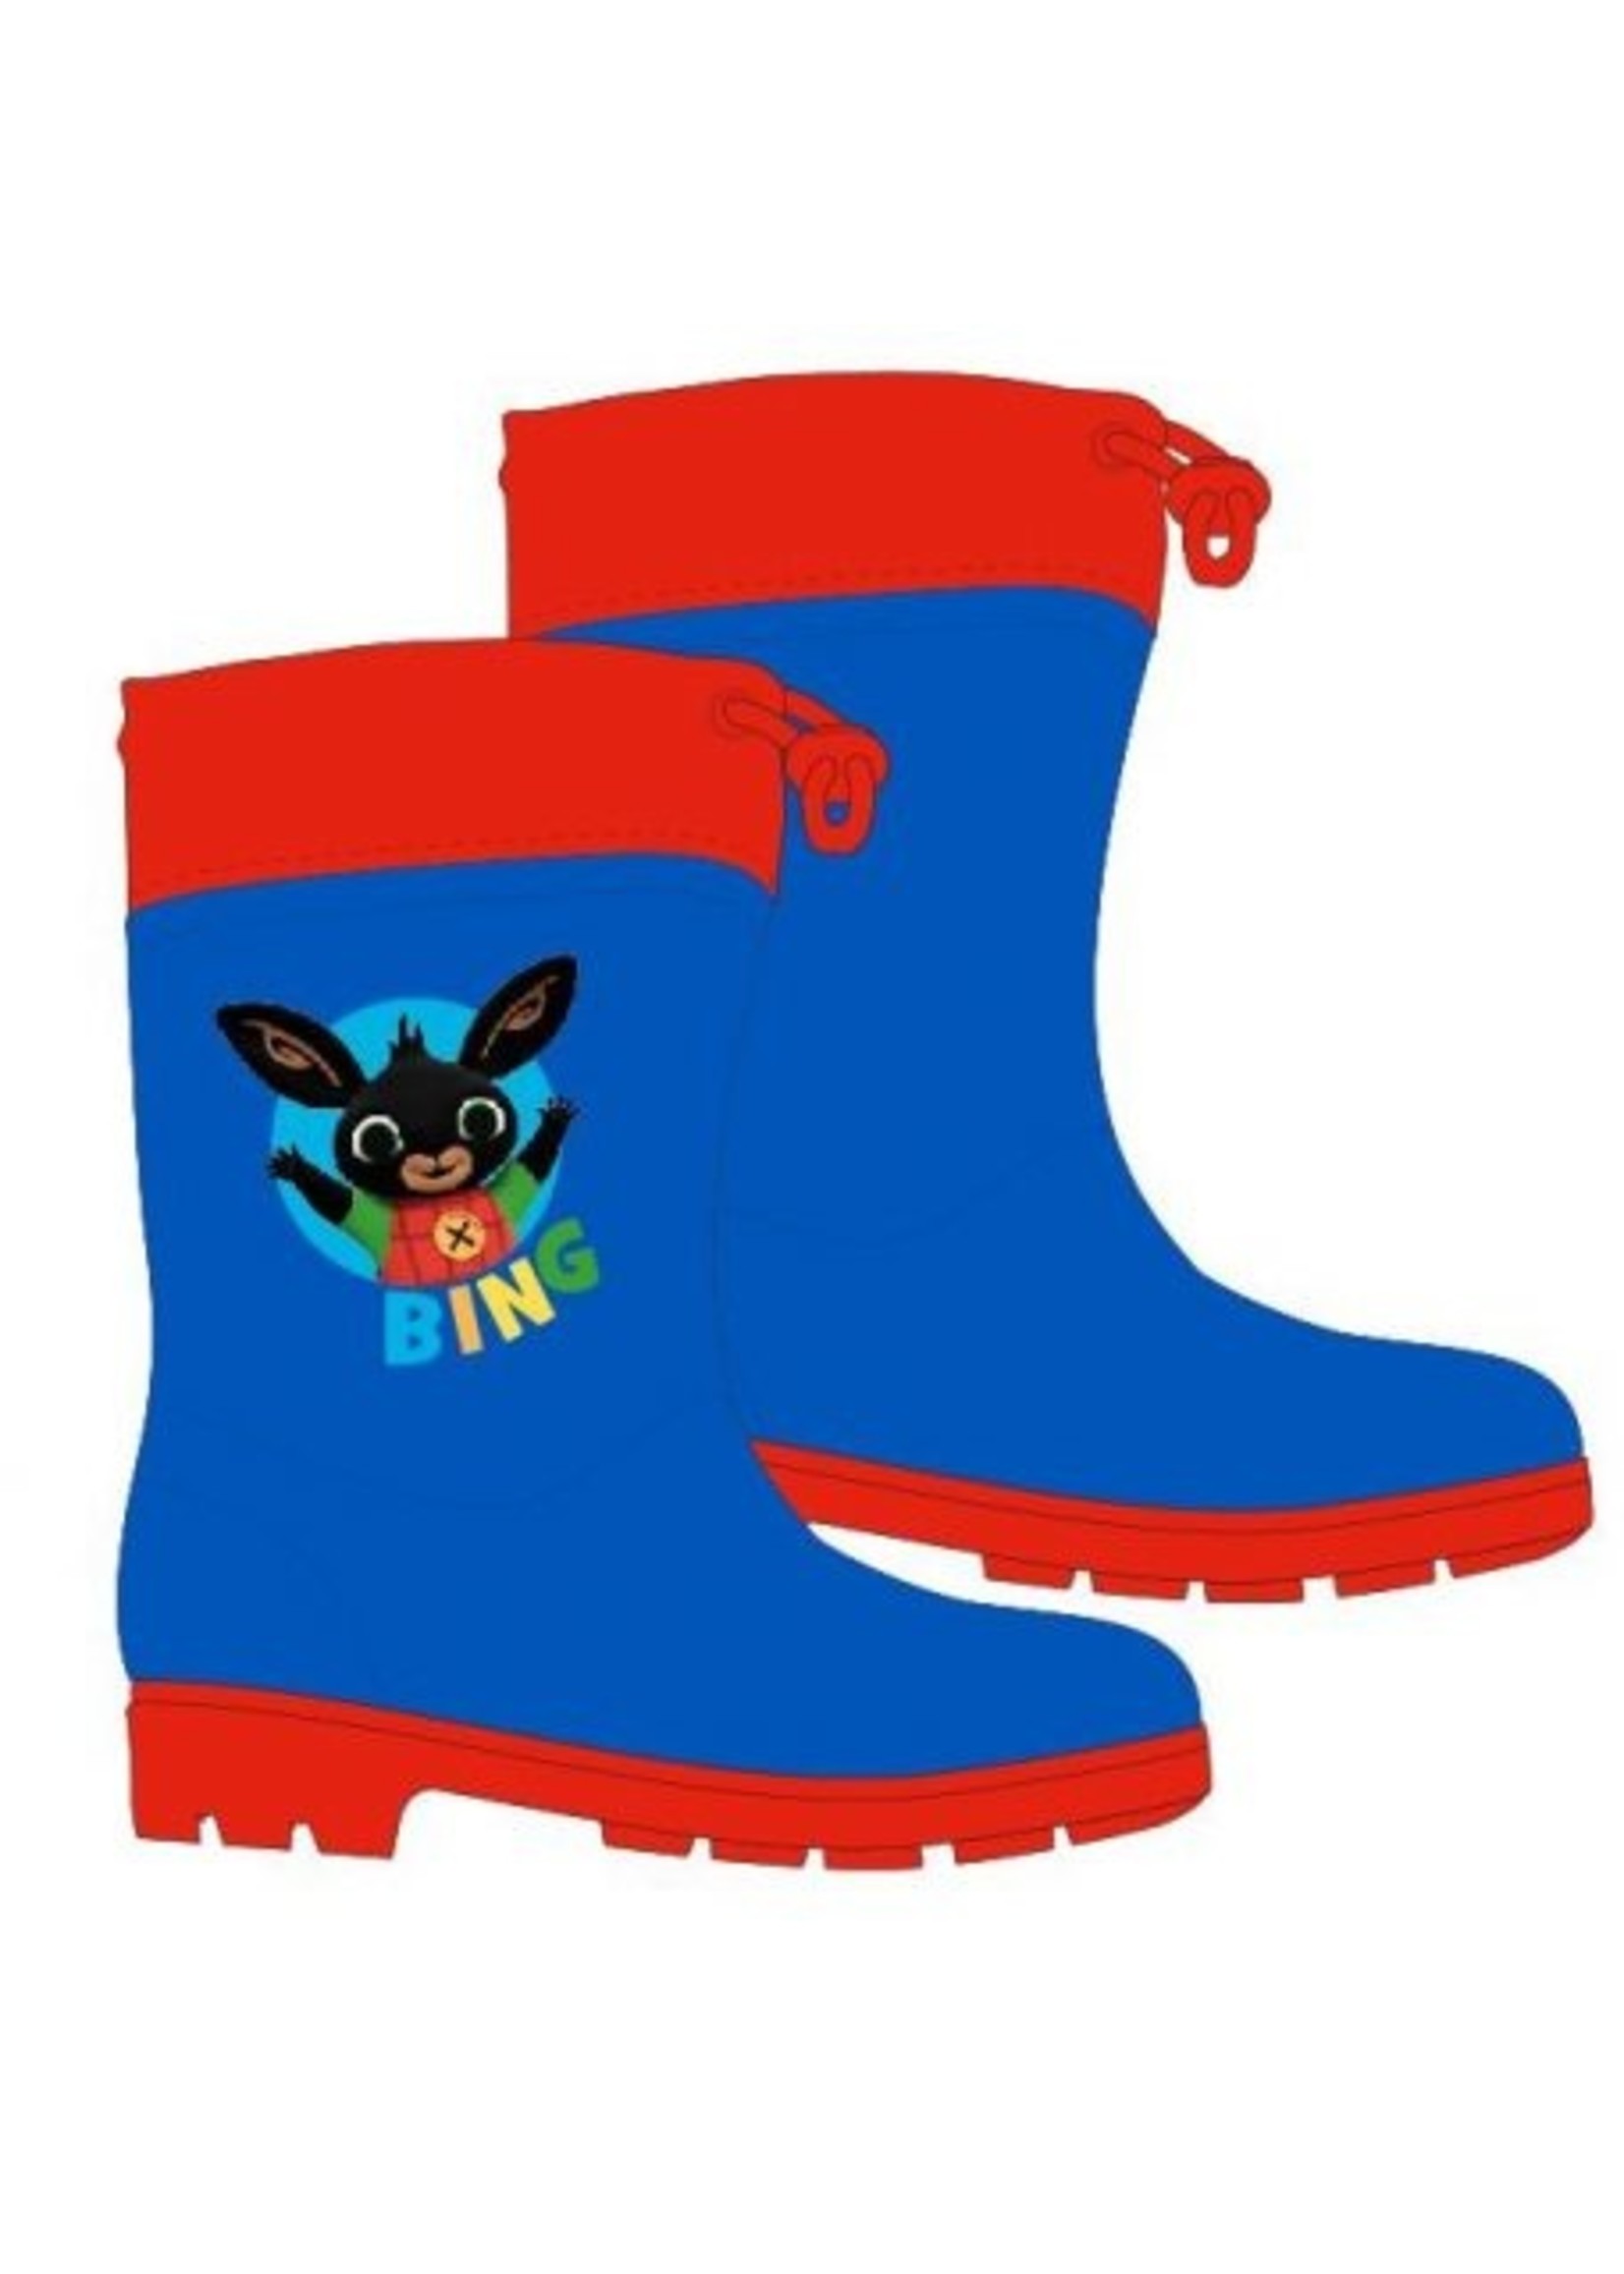 Bing Bunny Bing rain boots from Bing blue